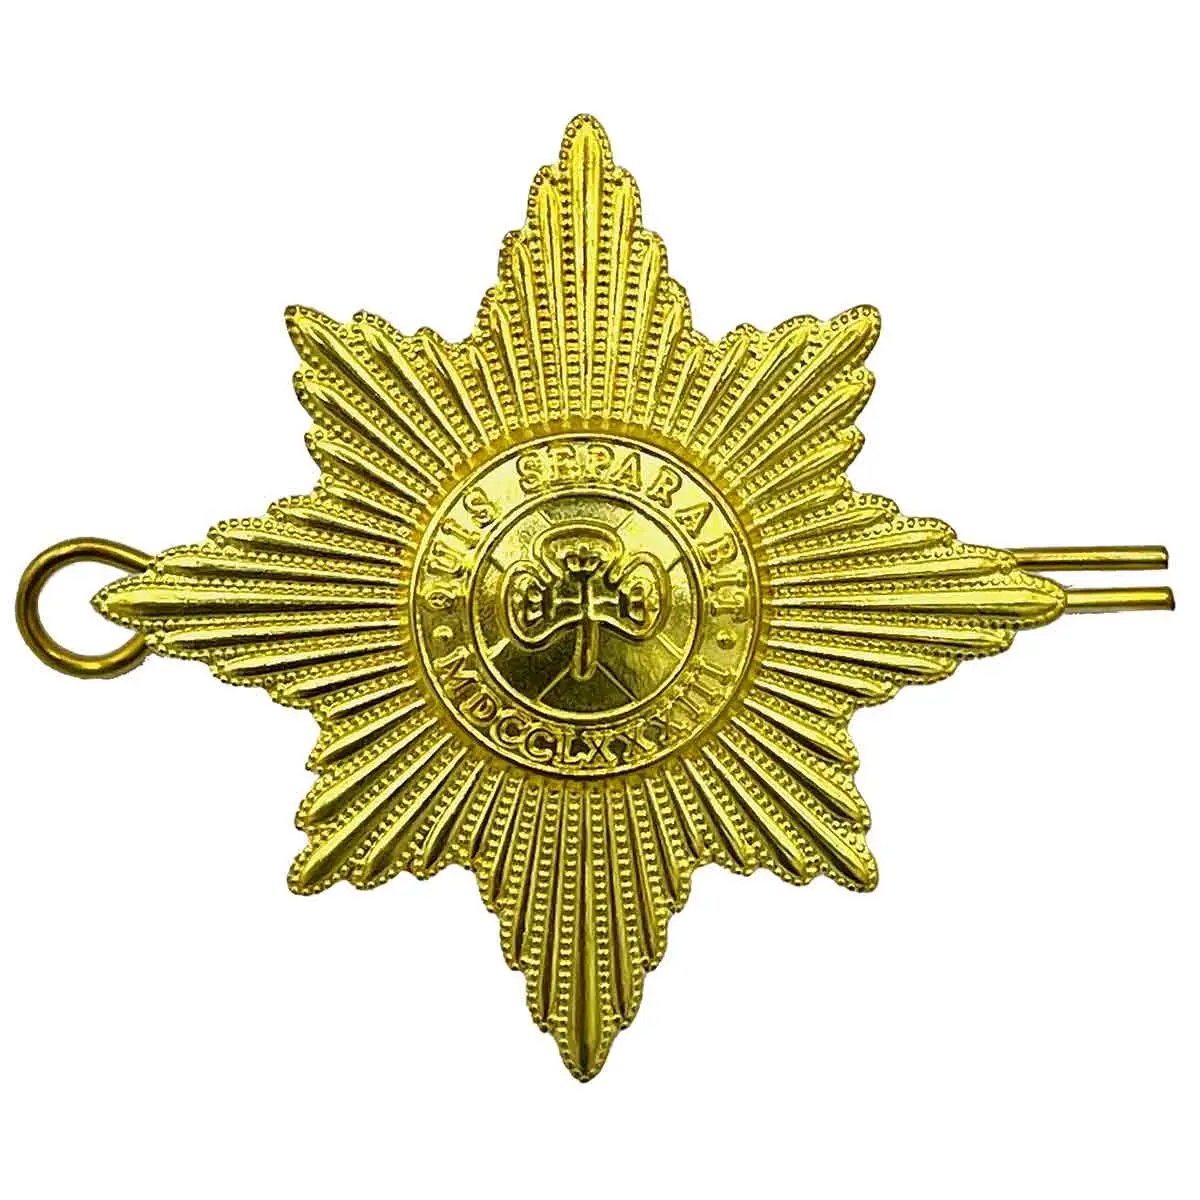 Irish Guards Beret Cap Badge - John Bull Clothing